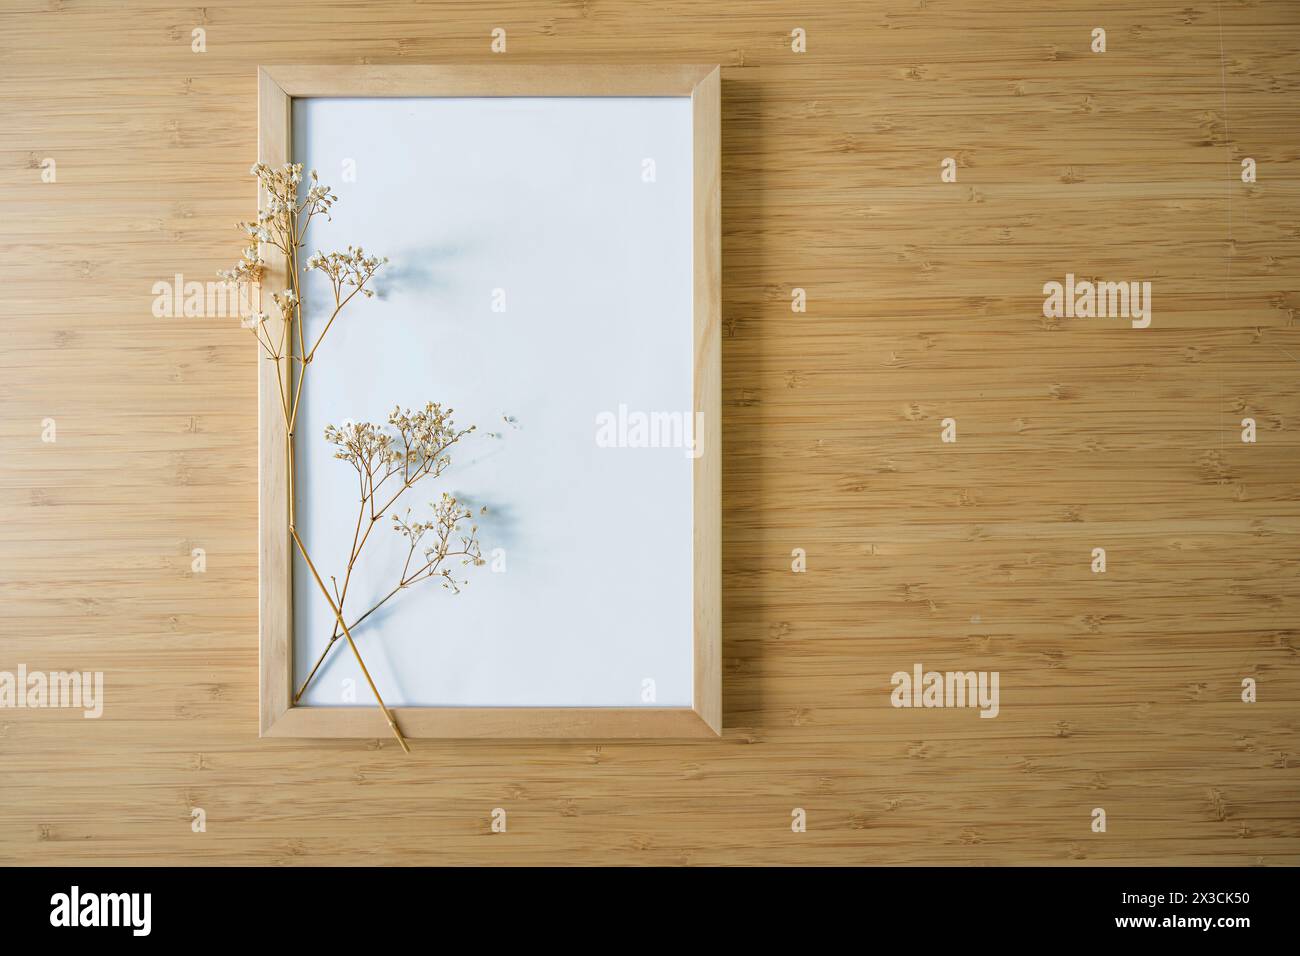 Kleiner gypsophila-Zweig auf einem leeren Bilderrahmen auf Bambushintergrund, Stillleben und Wohnkultur im minimalistischen Japandi-Stil, Hintergrund für Produ Stockfoto